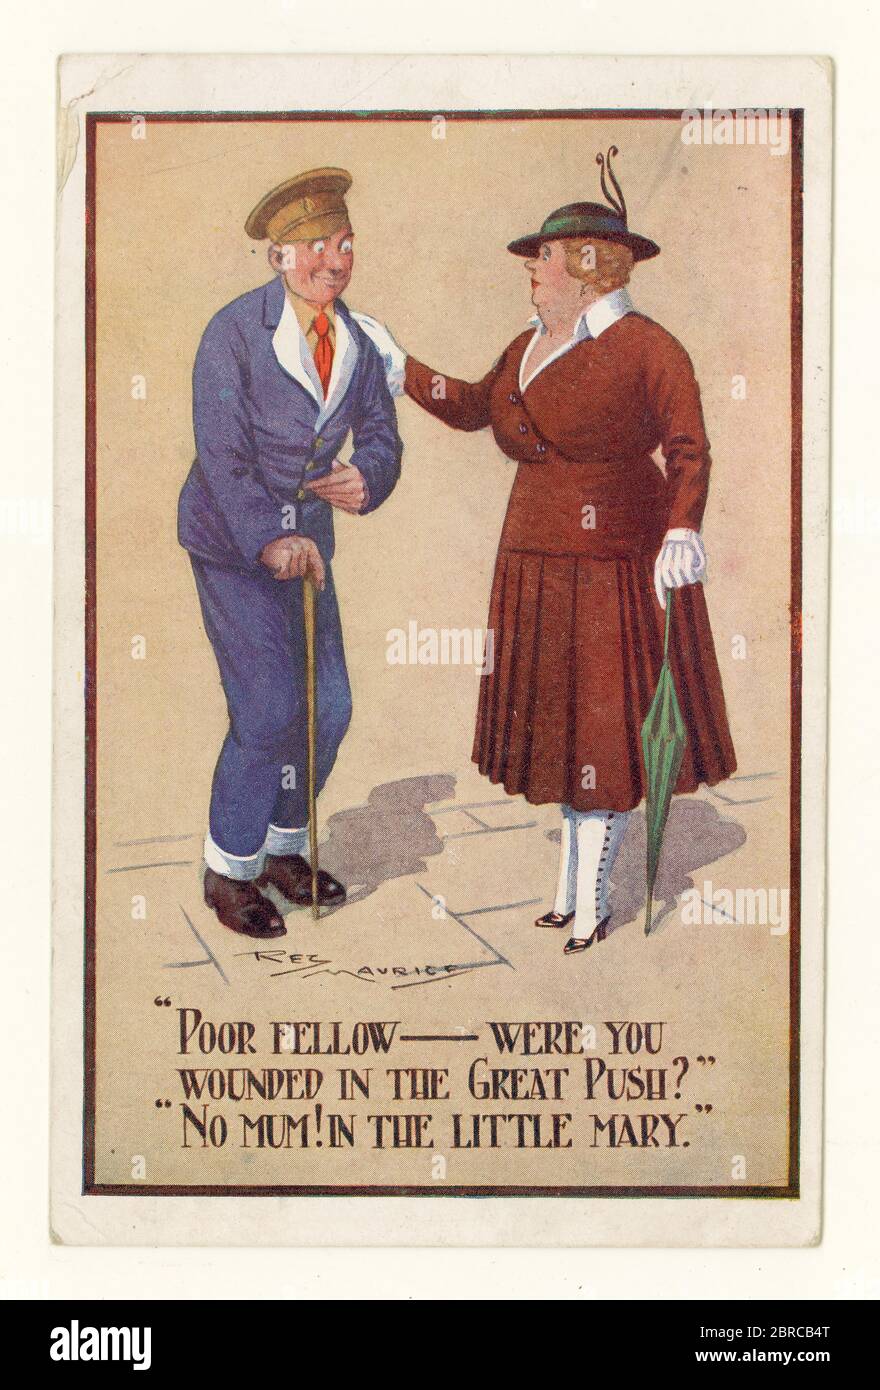 Original Comic-Postkarte aus der Zeit WW1 mit einem verwundeten Soldaten, der im Magen verletzt wurde, datiert vom 17. August 1917, Großbritannien Stockfoto